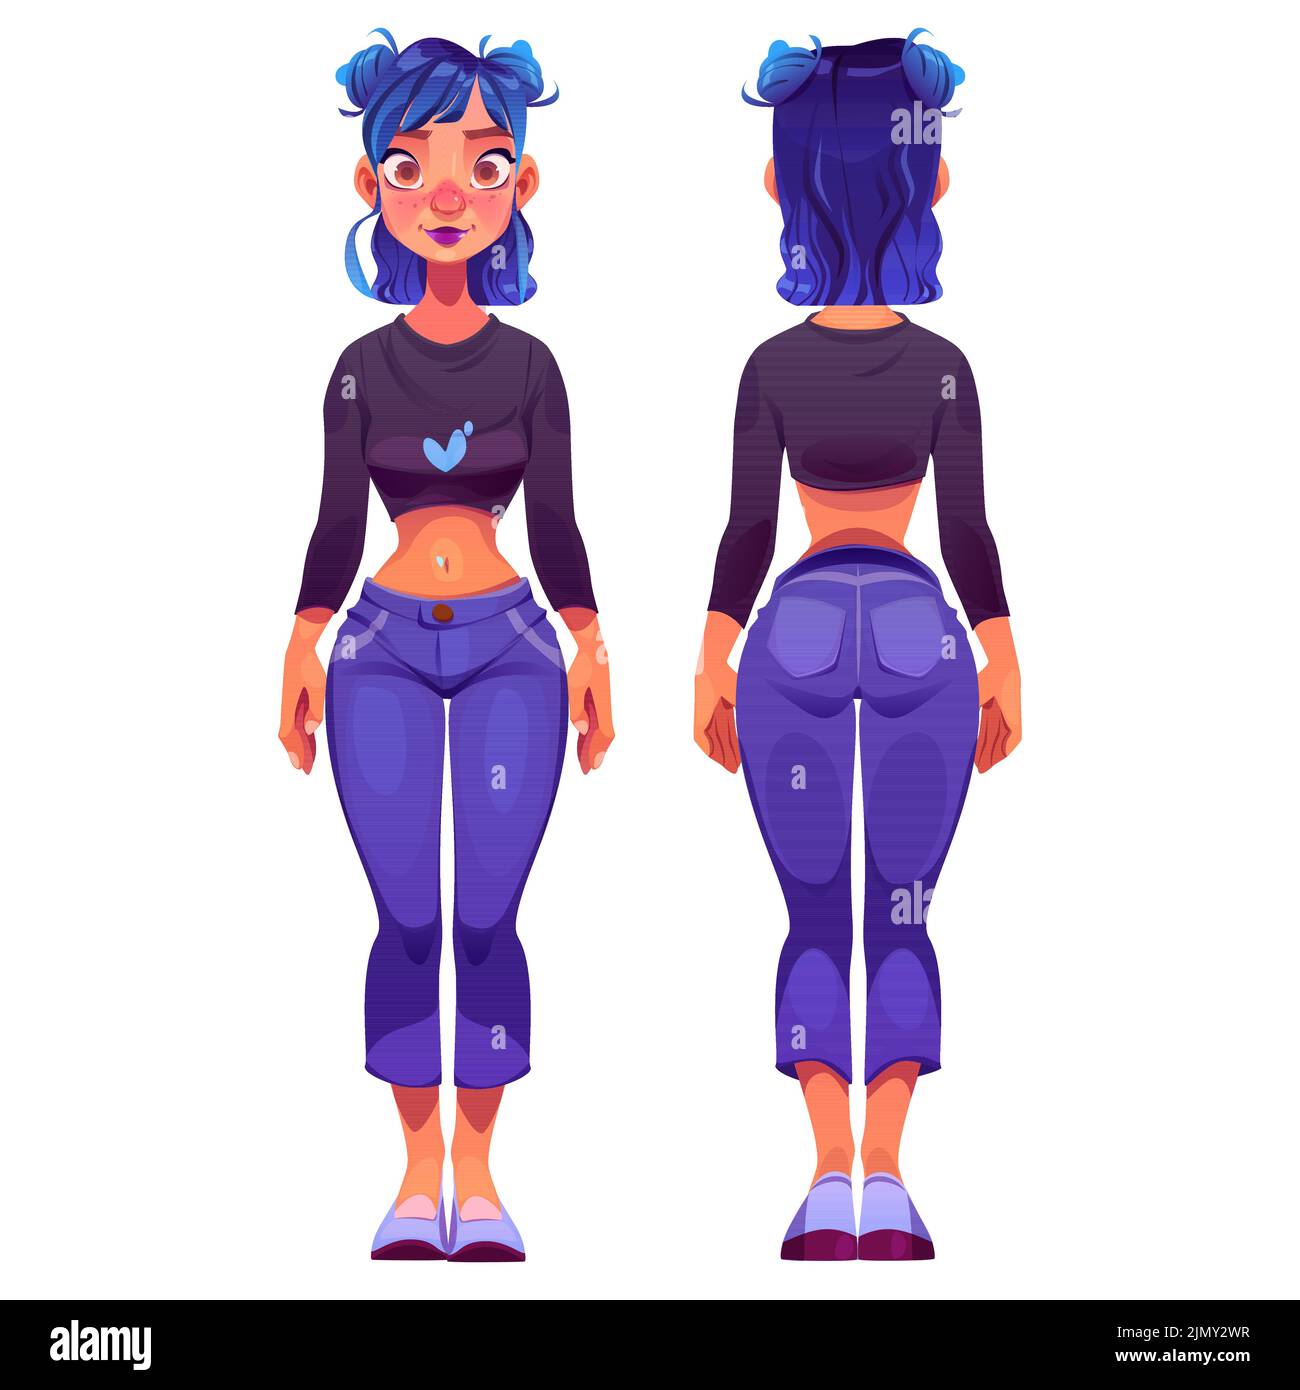 Caricatura joven de pie, frente y atrás ver el personaje de animación del juego. Ilustración vectorial de chica delgada con pelo azul y colorido maquillaje en jeans informales y top. Libertad de expresión Ilustración del Vector